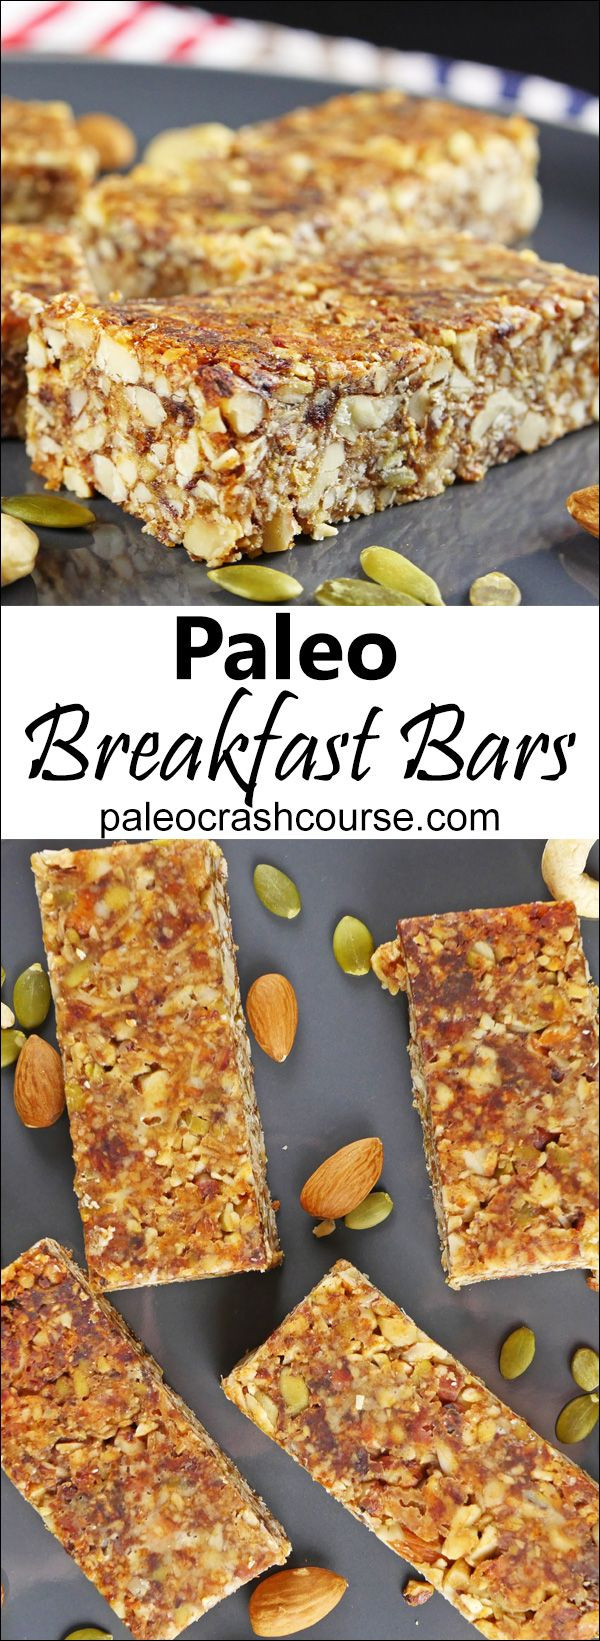 Paleo Breakfast Bar Recipes
 Paleo Breakfast Bars Recipe